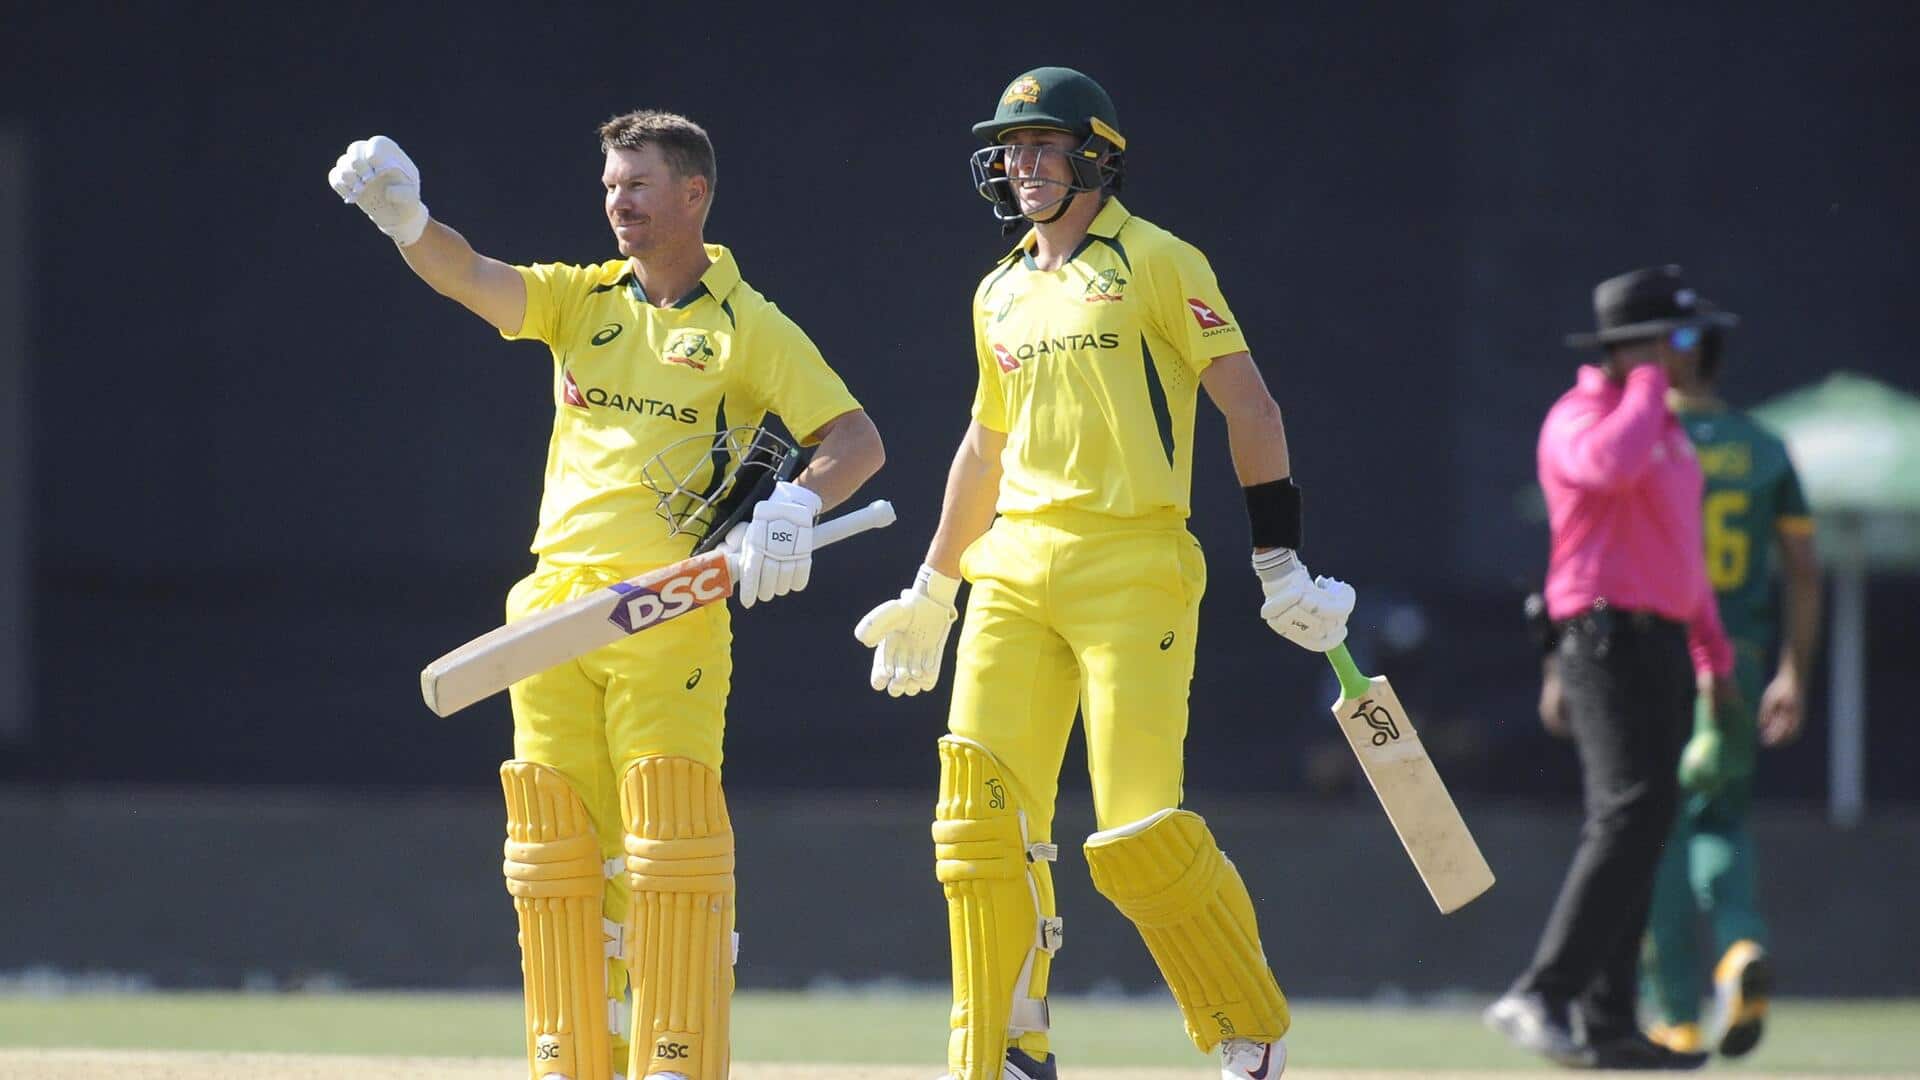 दक्षिण अफ्रीका बनाम ऑस्ट्रेलिया: डेविड वार्नर ने महज 27 गेंदों में जड़ा अर्धशतक, जानिए उनके आंकड़े 